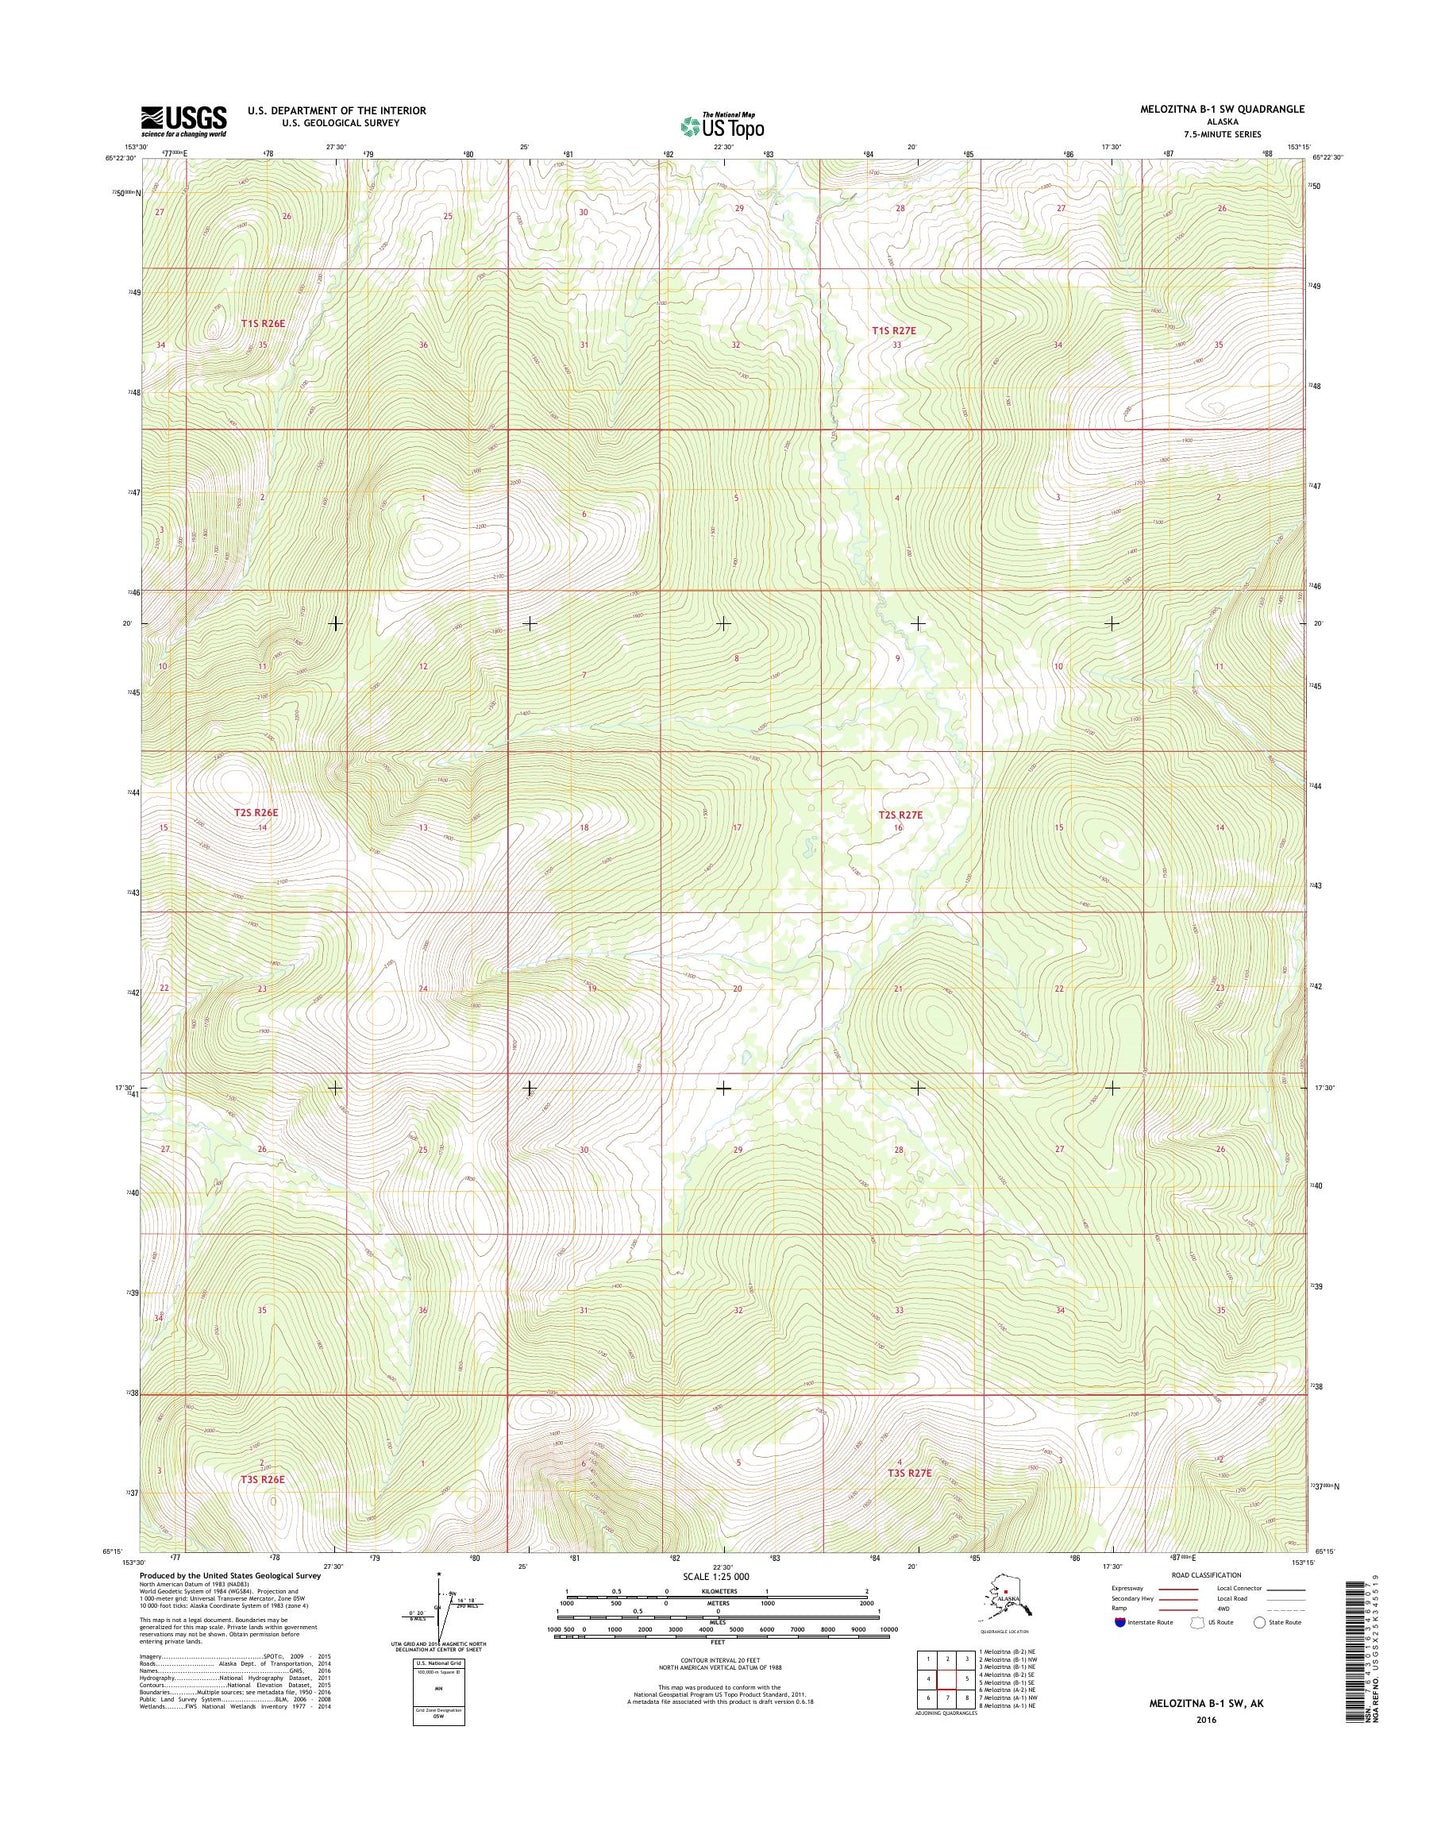 Melozitna B-1 SW Alaska US Topo Map Image